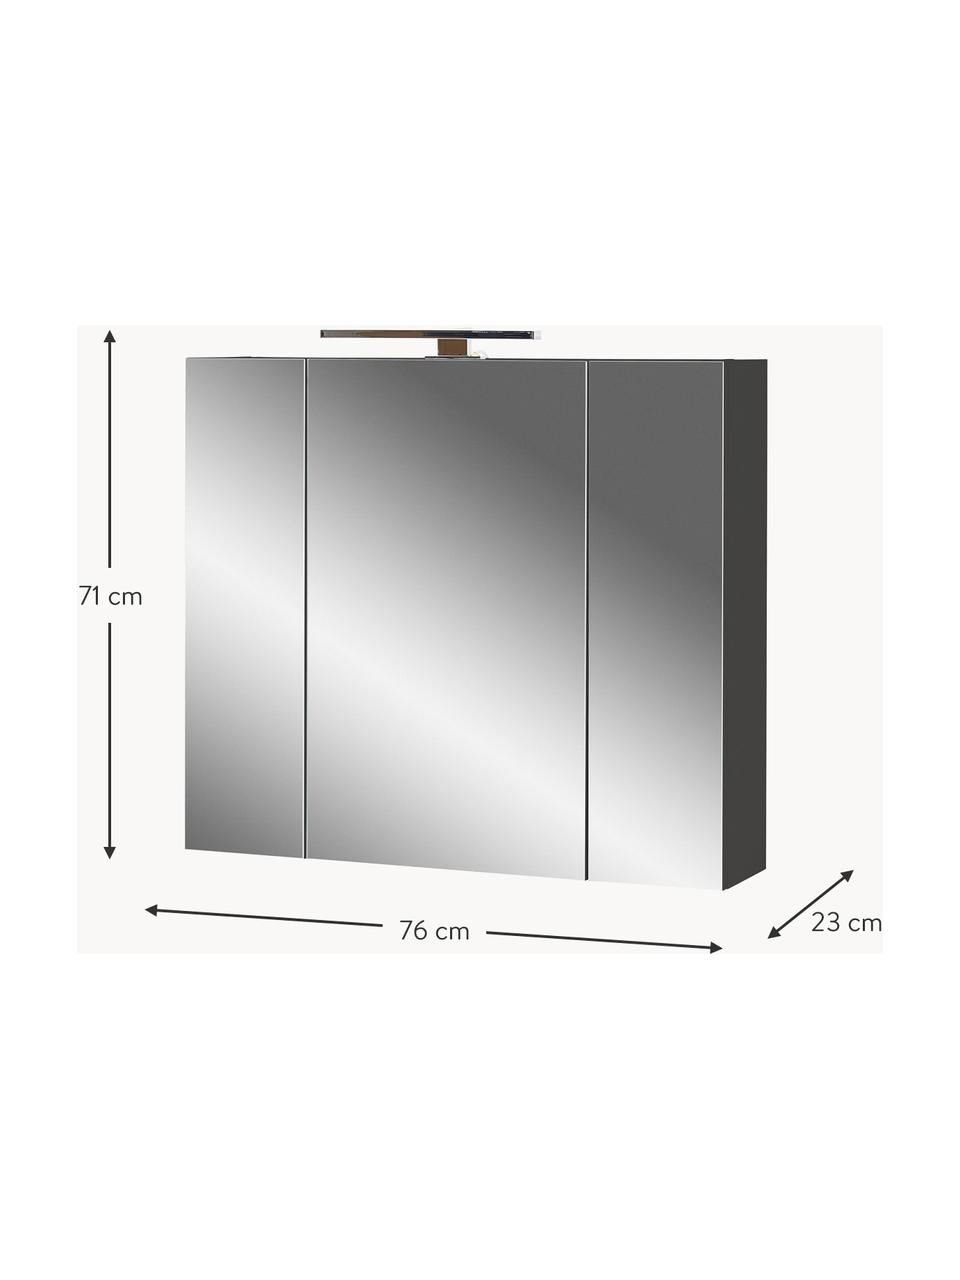 Badkamer spiegelkast Elisa met LED verlichting, B 76 cm, Frame: met melamine beklede spaa, Antraciet, zilverkleurig, B 76 x H 71 cm